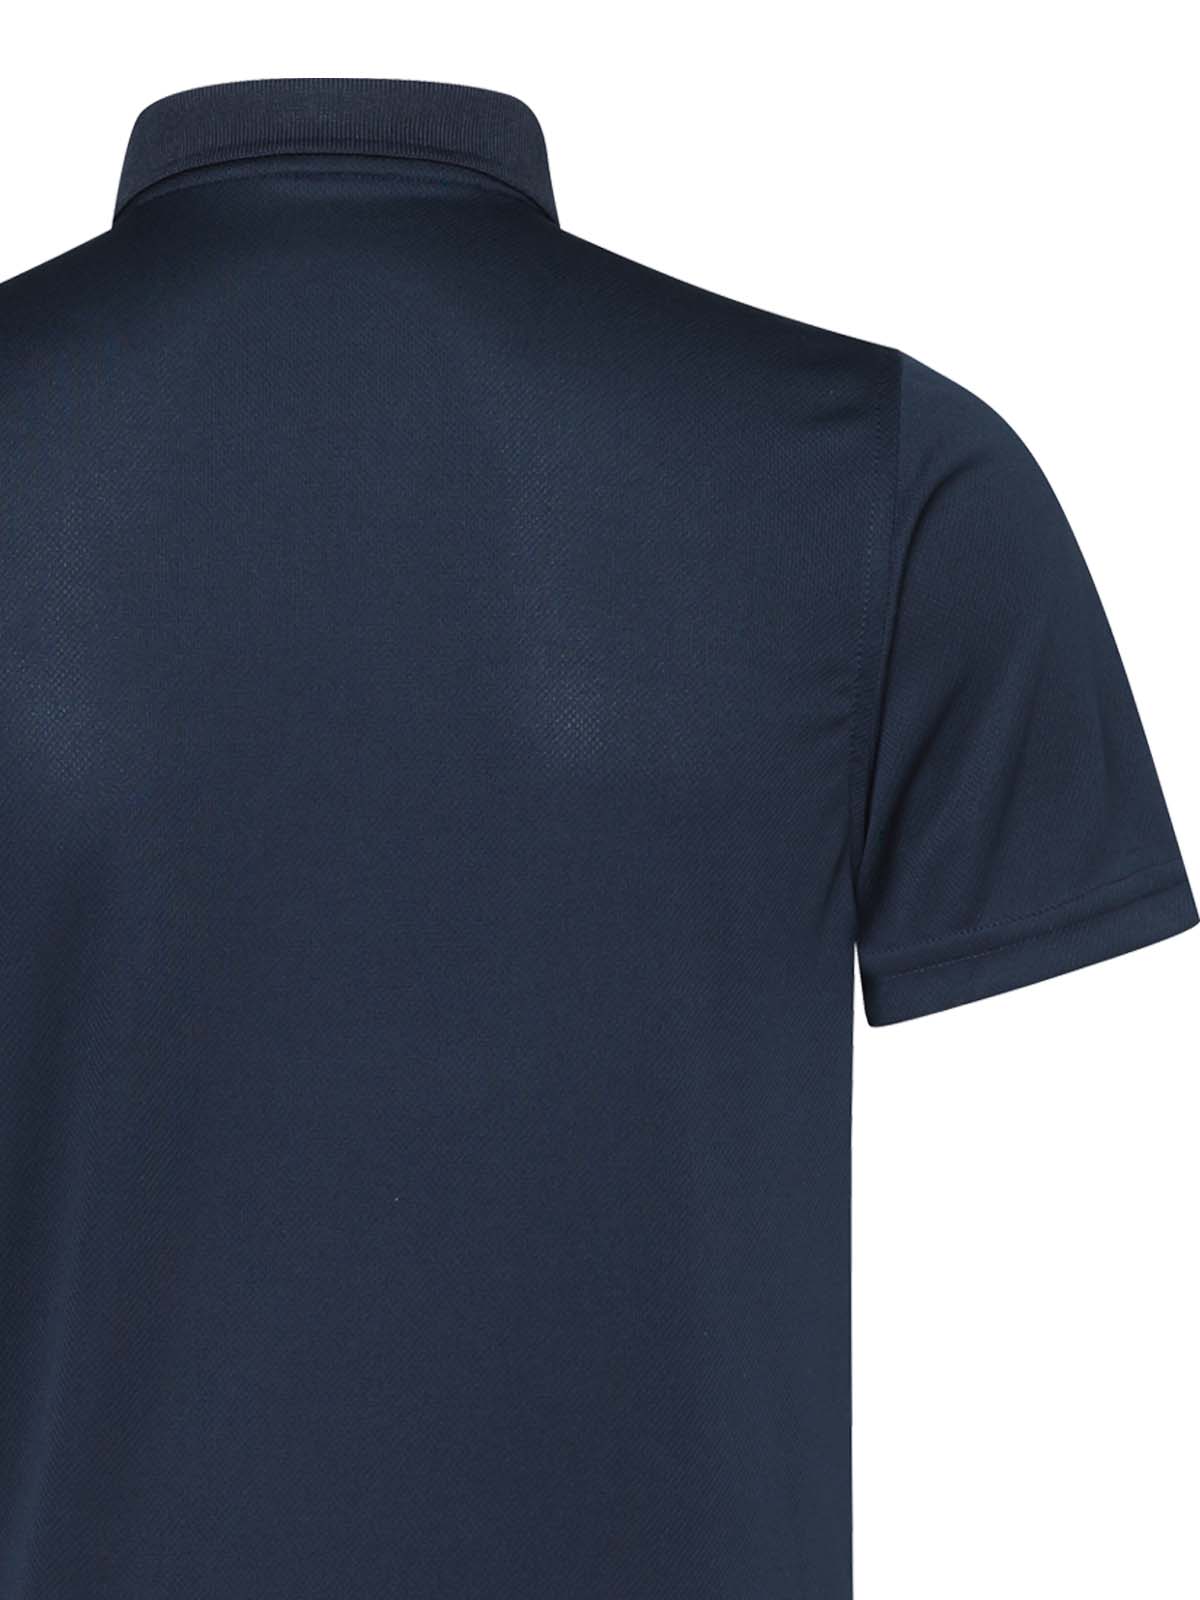 USA Polo Shirt Navy 